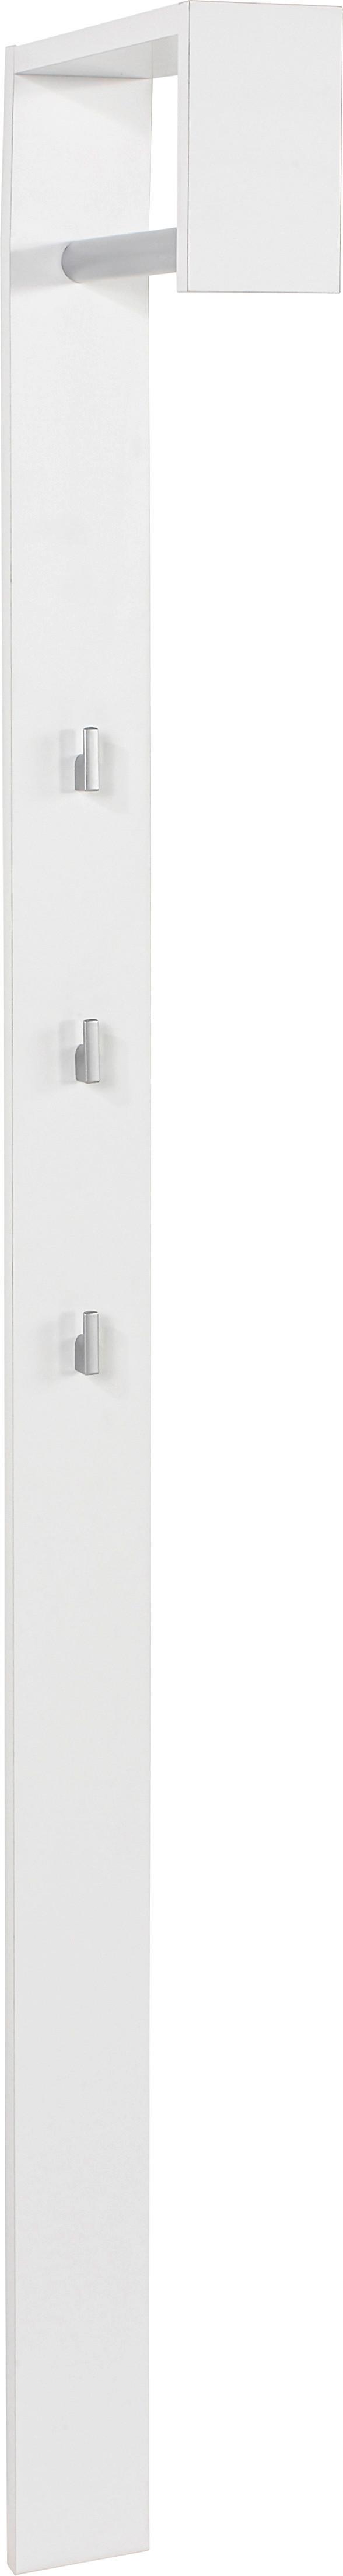 Šatní Panel Senex - bílá, Moderní, dřevo (10/170/33cm)